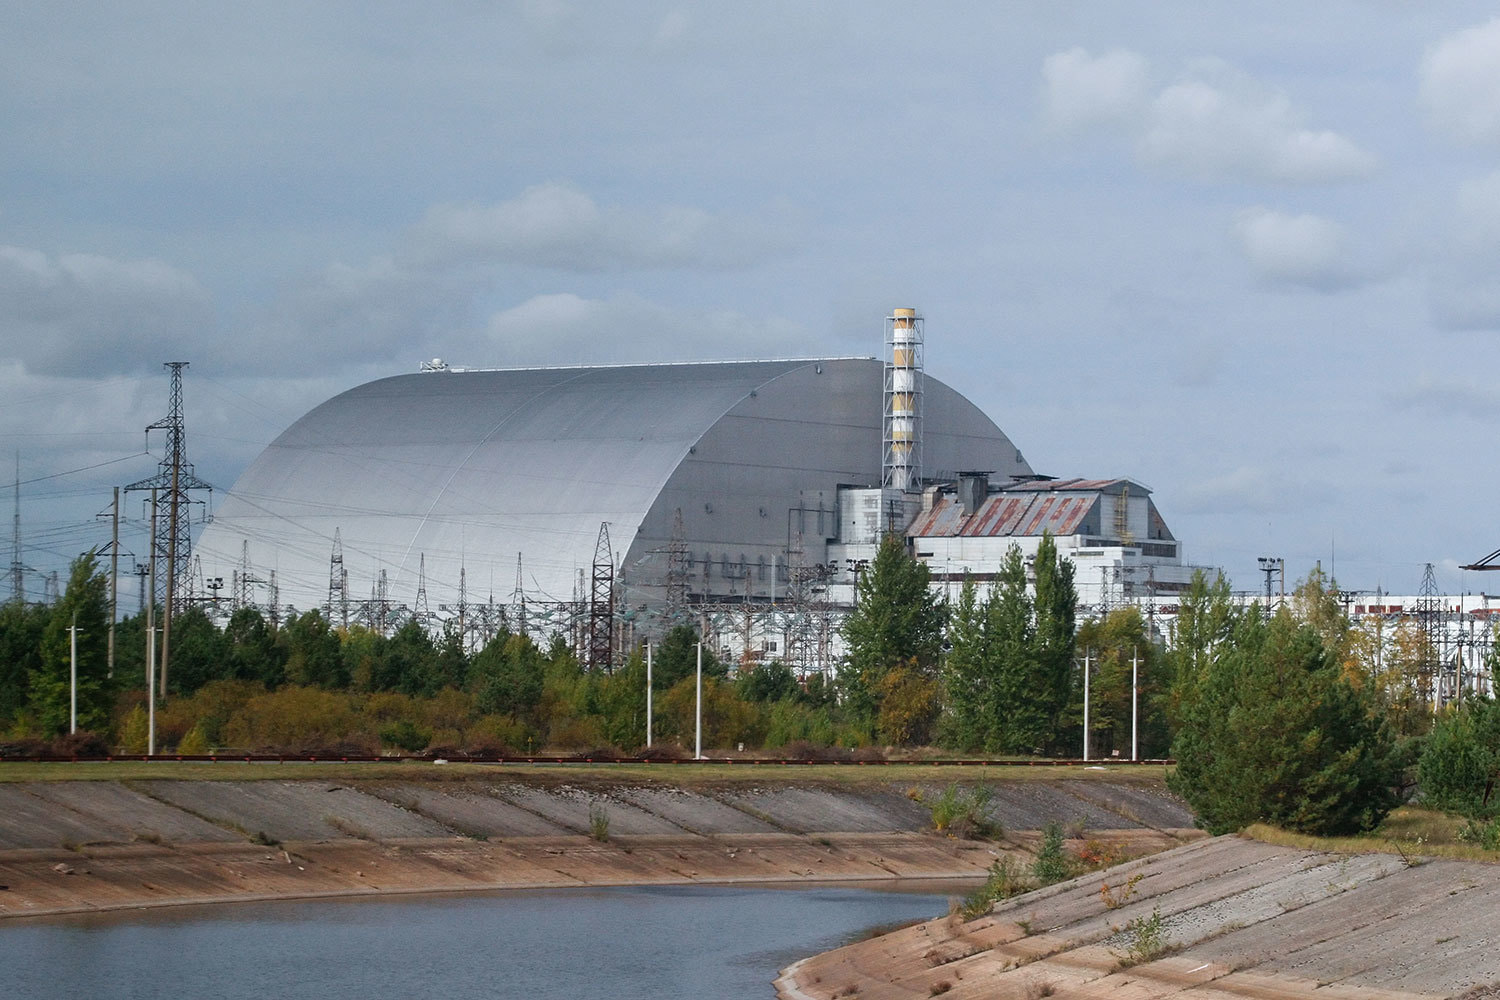 Взрыв в реакторе на Чернобыльской АЭС произошел 26 апреля 1986 г., радиоактивному загрязнению подверглось 155 000 кв. км территории бывшего СССР с населением почти 7 млн человек. Вскоре после аварии на наиболее пострадавшей территории в 30 км от атомной станции была установлена зона отчуждения. По данным экспертов, в результате аварии на Чернобыльской АЭС суммарный выброс радиоактивных материалов составил около 50 млн кюри, что равнозначно последствиям взрыва 500 атомных бомб, сброшенных в 1945 г. на Хиросиму